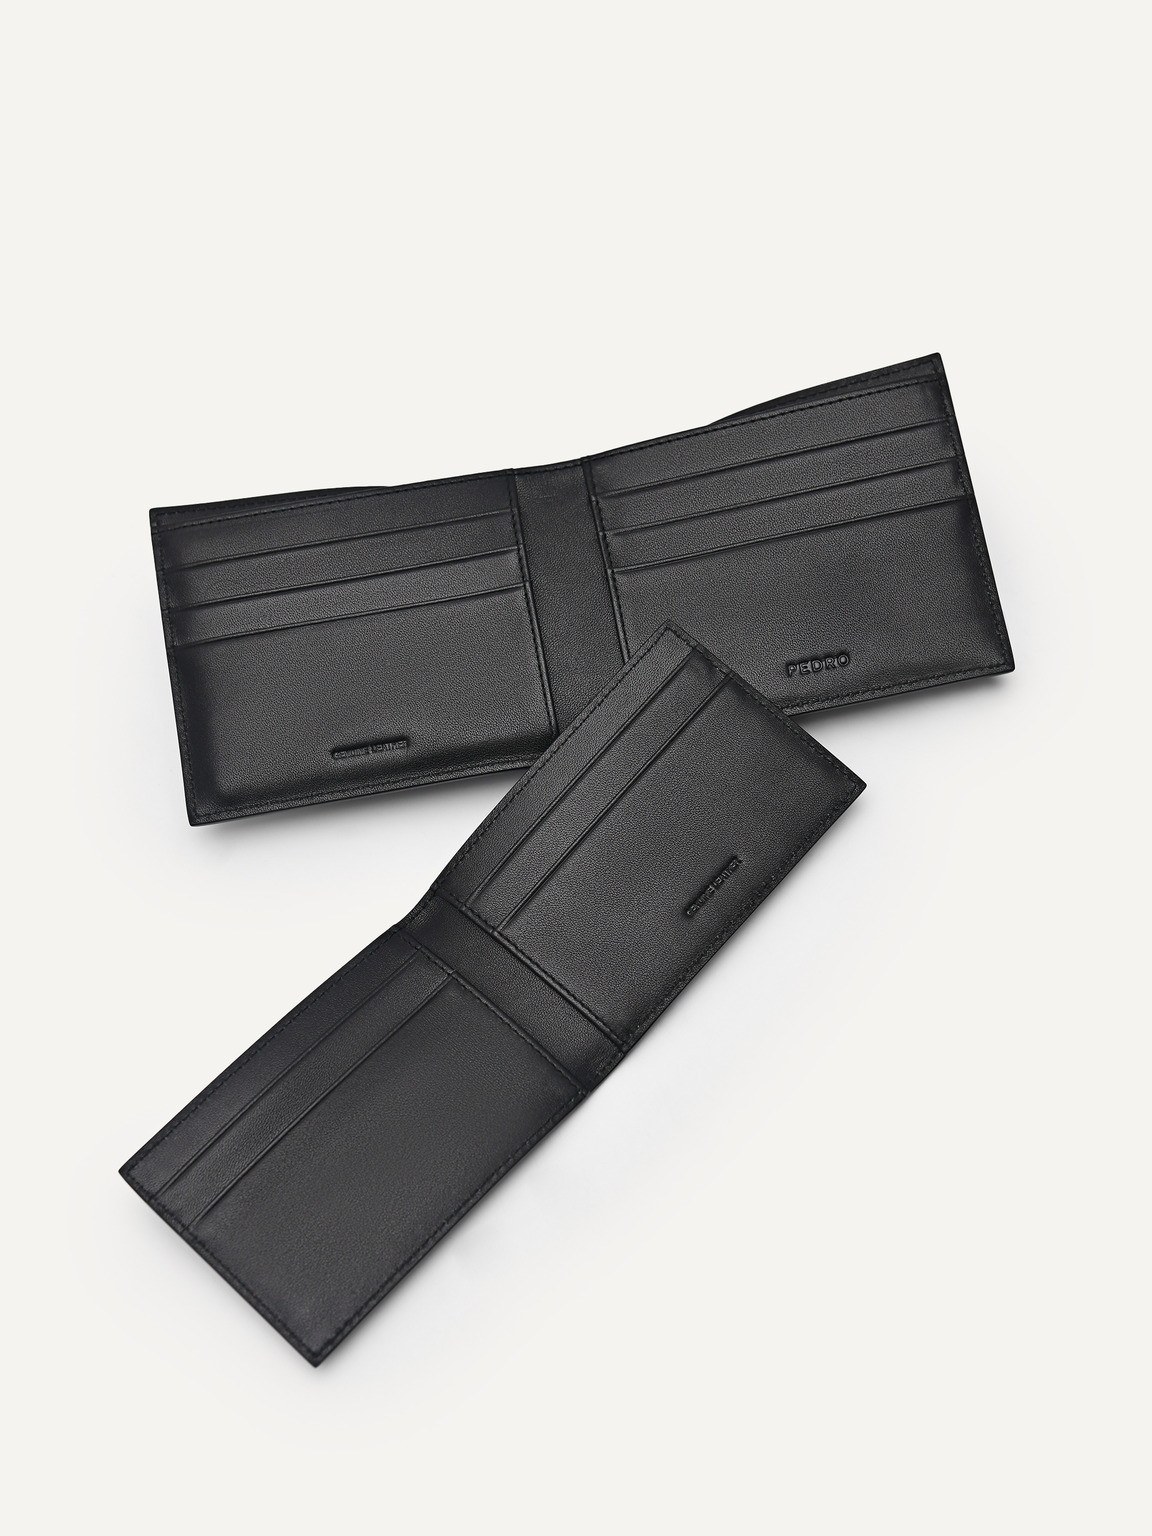 皮革雙折疊錢包配貼袋, 黑色